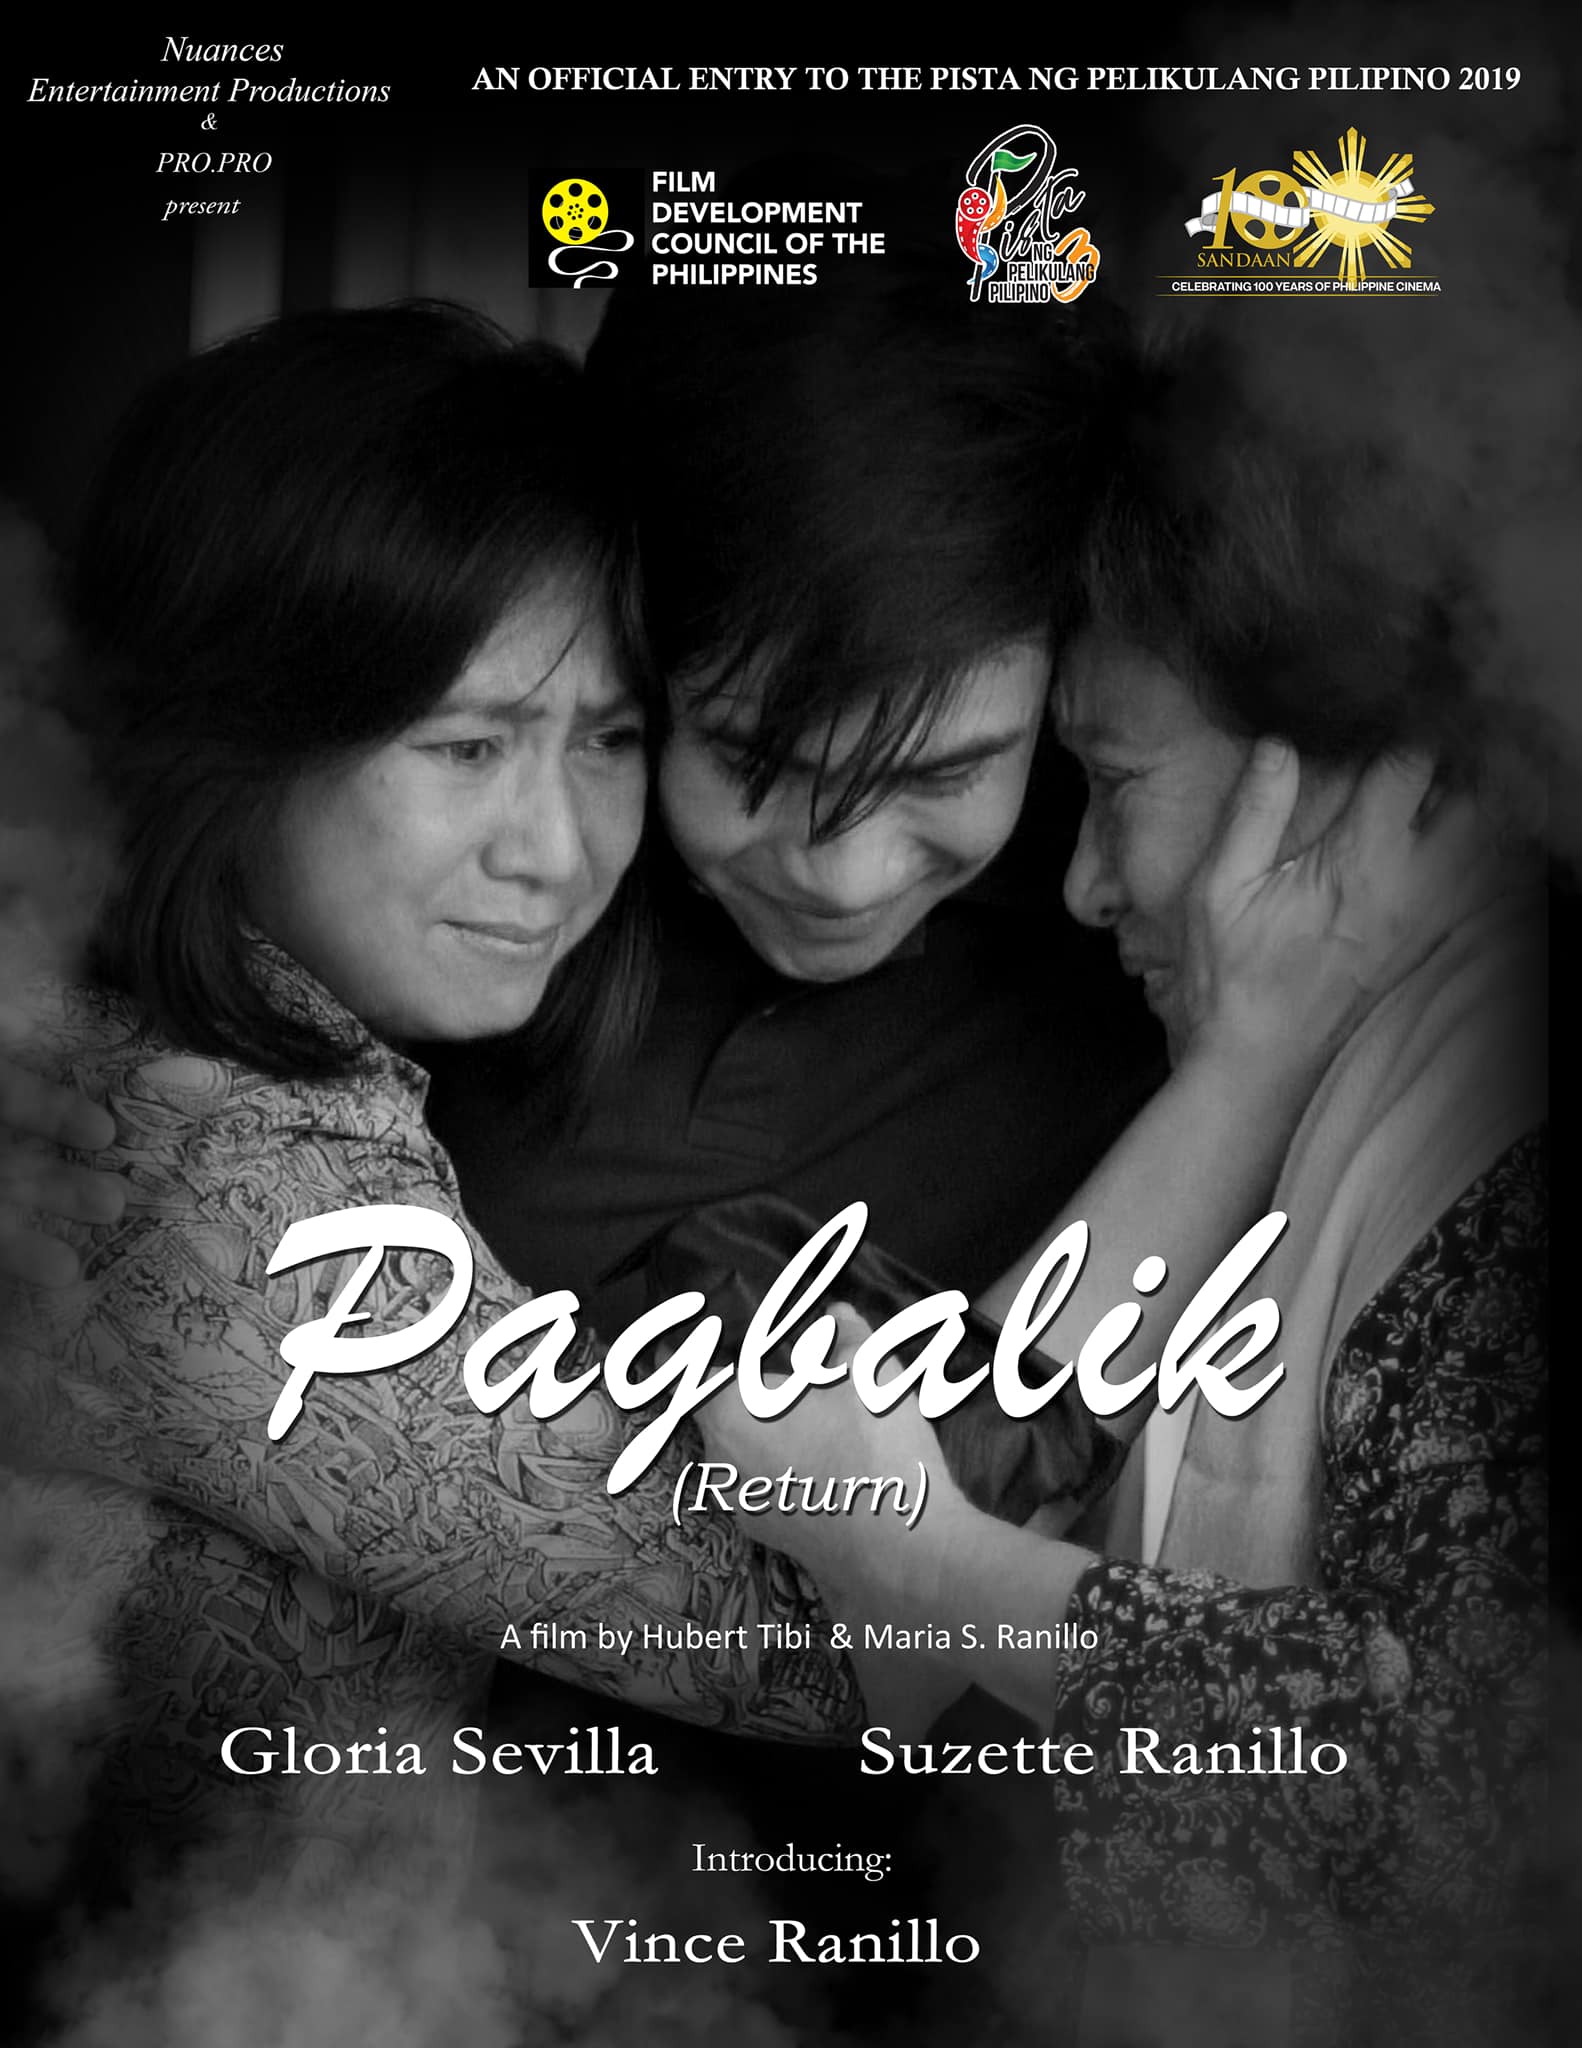 Poster of the movie Pagbalik. Photo: Pista ng Pelikulang Pilipino Facebook page.